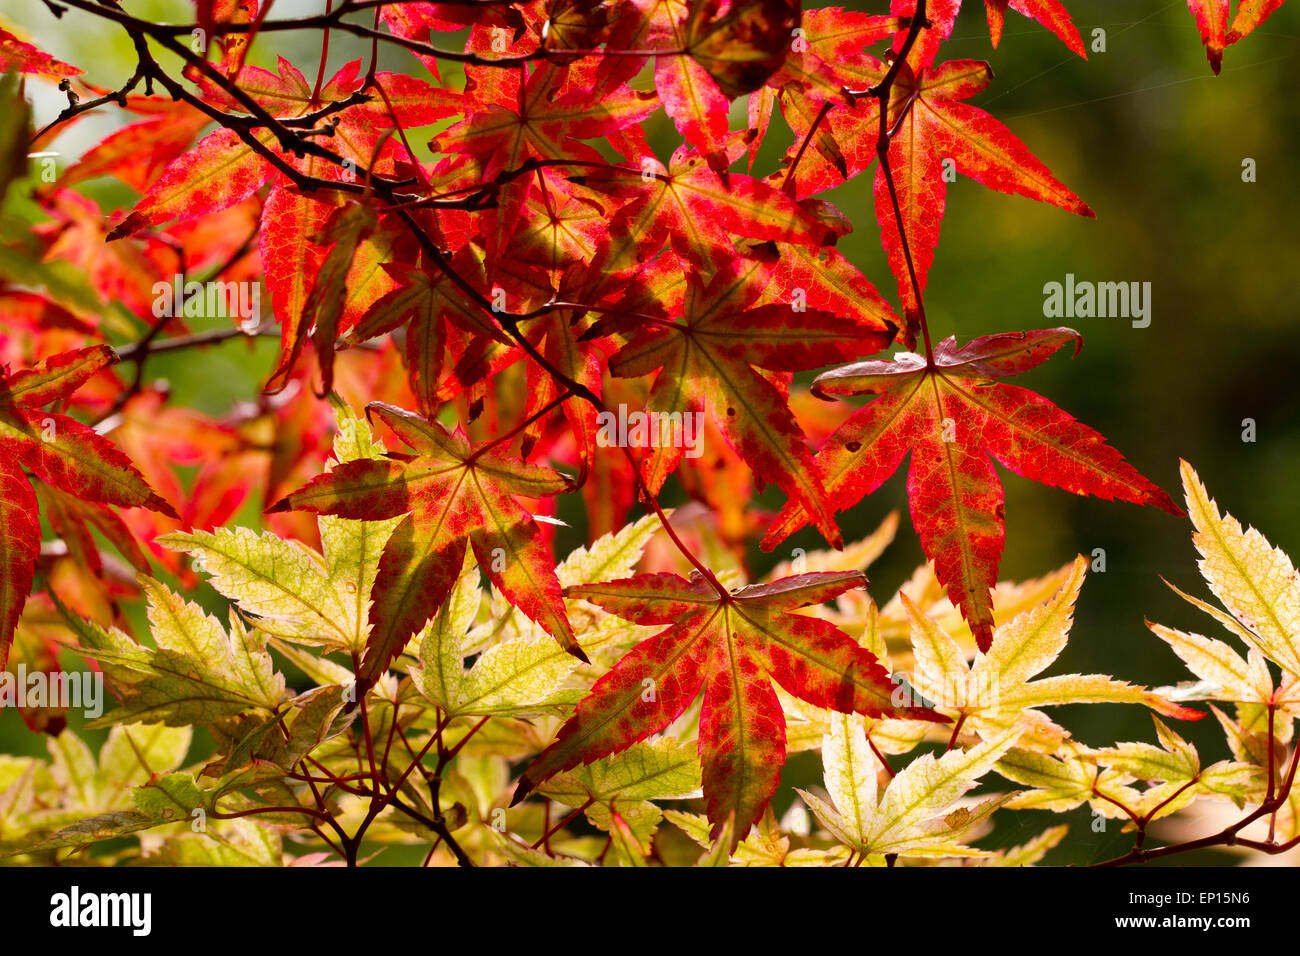 Japanischer Ahorn (Acer Palmatum) Sorte 'Ginko San' Blätter an einem Baum Farbe im Herbst drehen. Herefordshire, England. September. Stockfoto